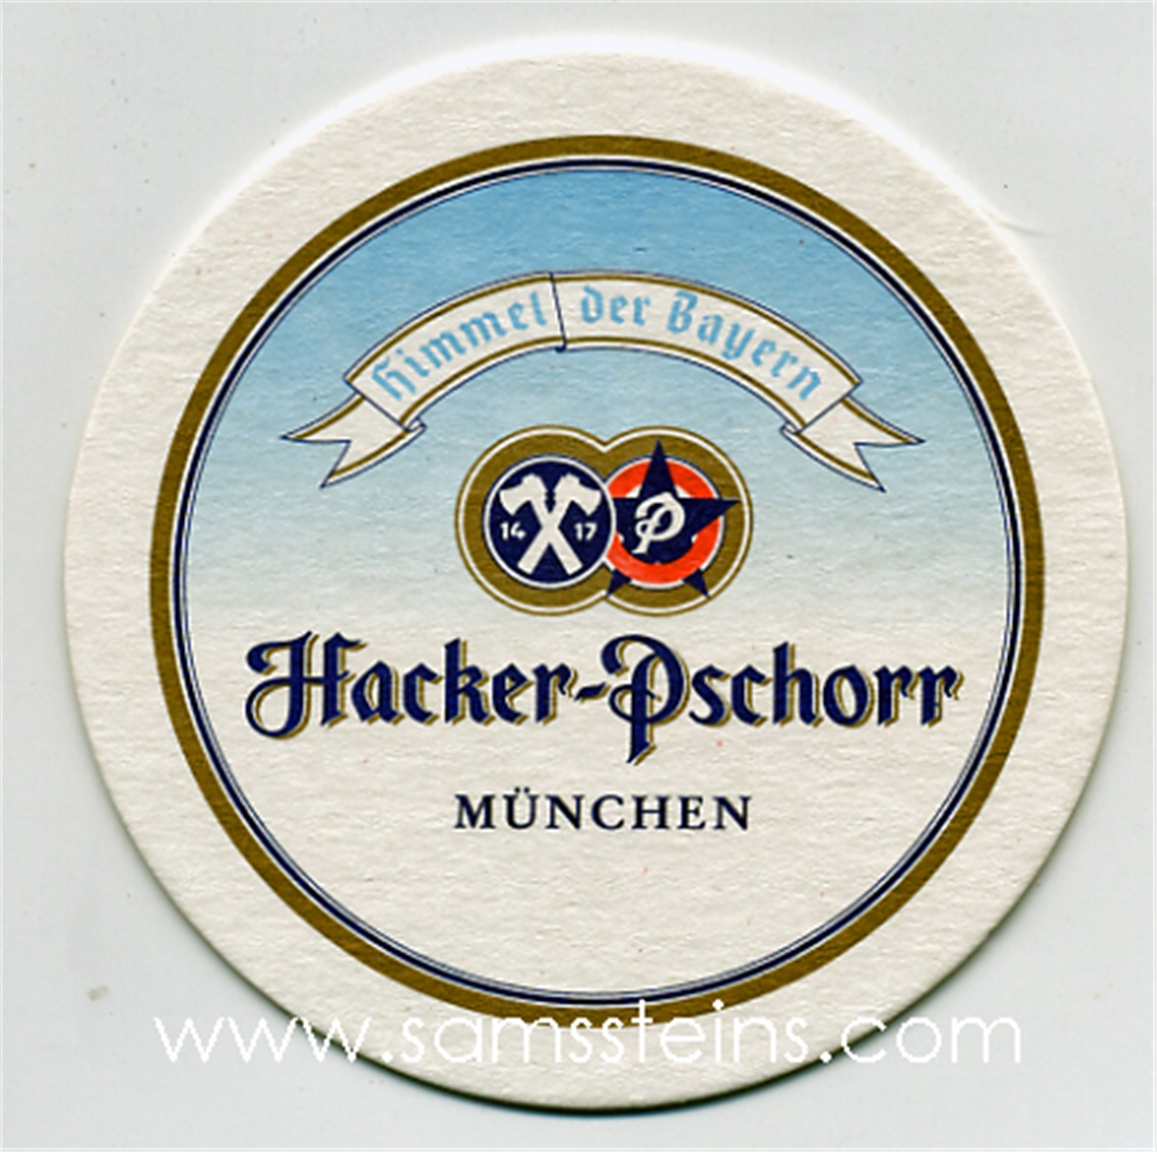 Hacker-Pschorr Beer Coaster